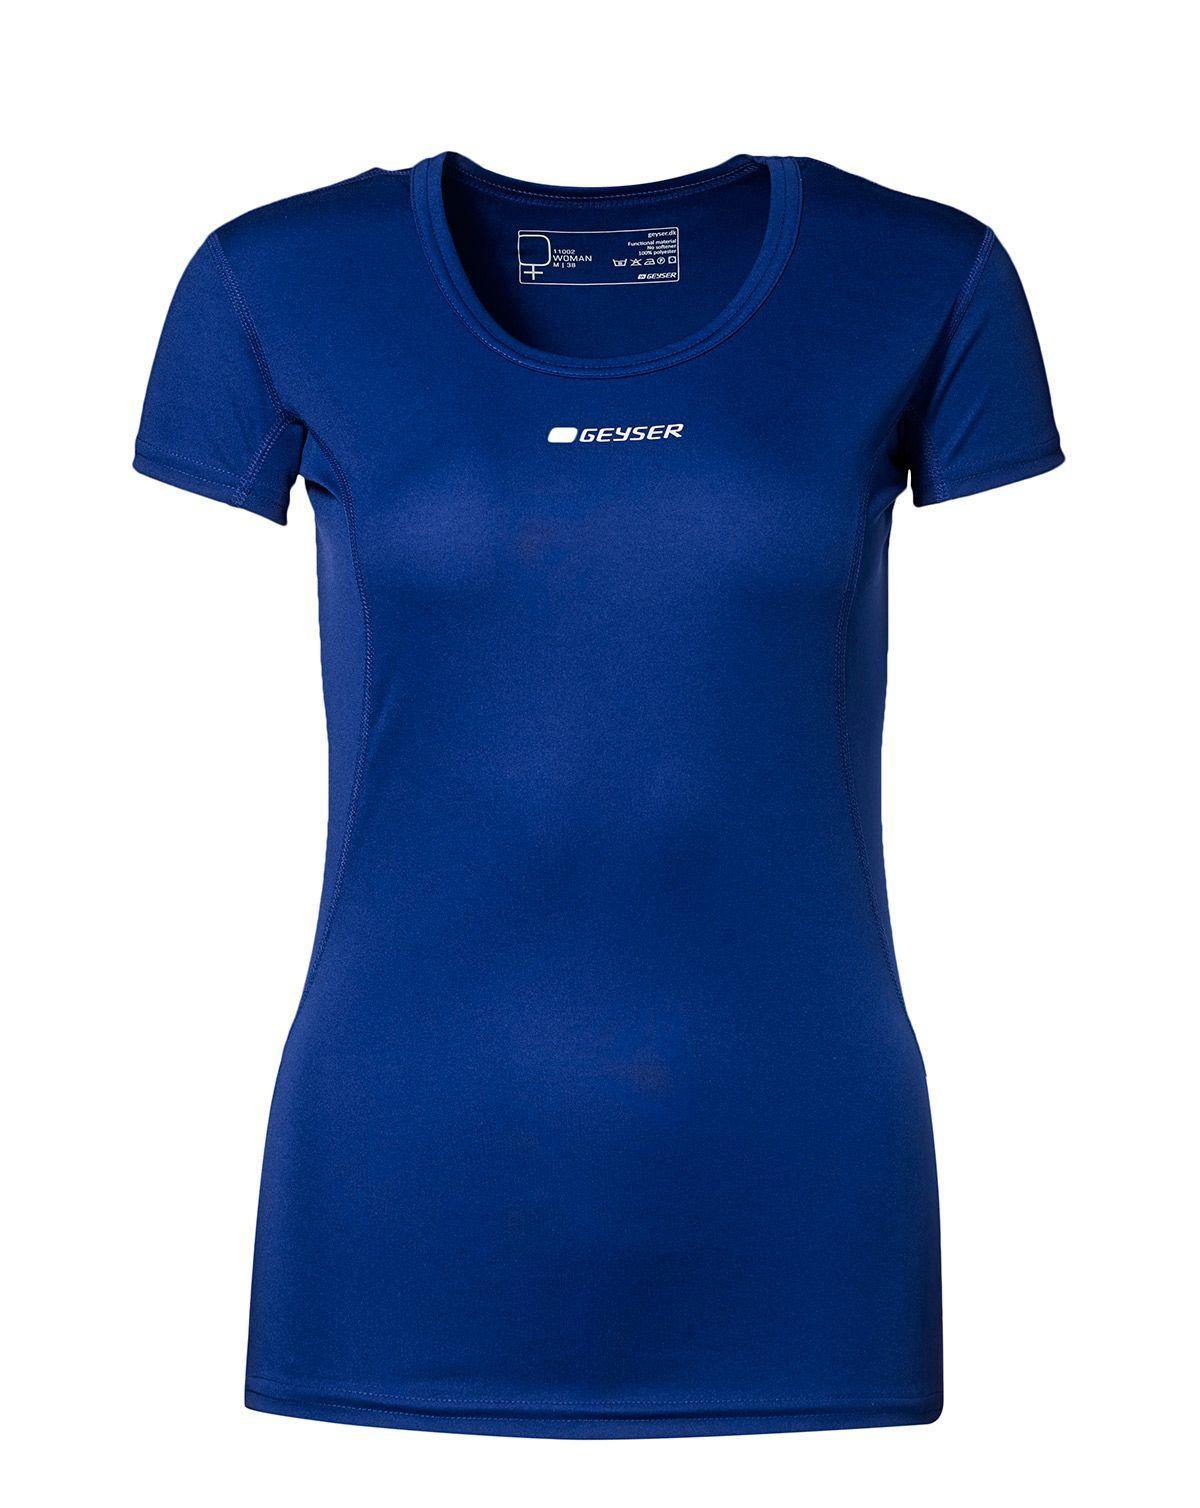 GEYSER Active T-shirt til Kvinder (Navy, XL)